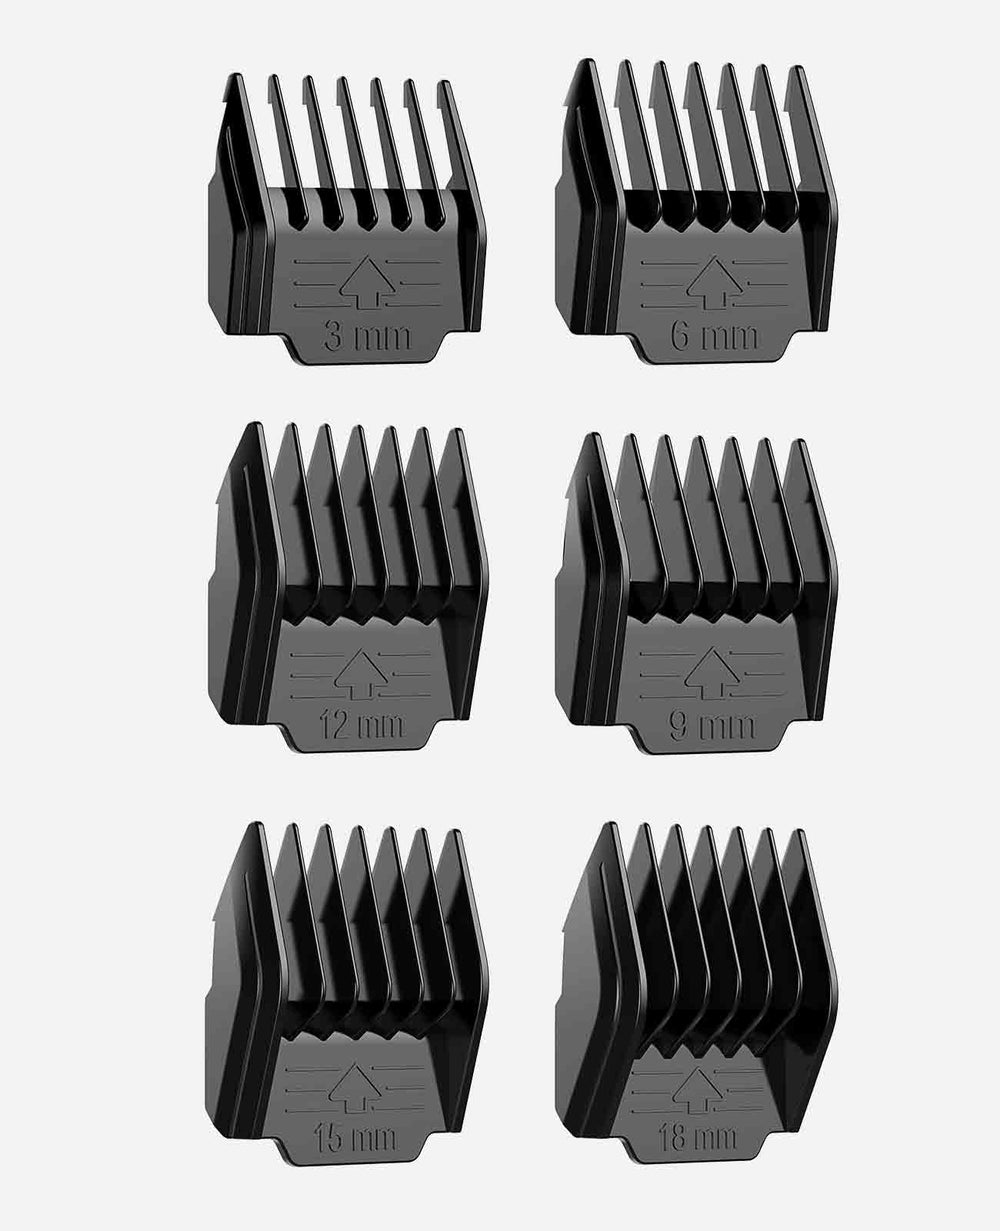 6Pcs Attachment Guide Comb Guards für oneisall Low Noise Hundeschere #1-#6, 3mm-18mm Schnittlänge, Schwarz